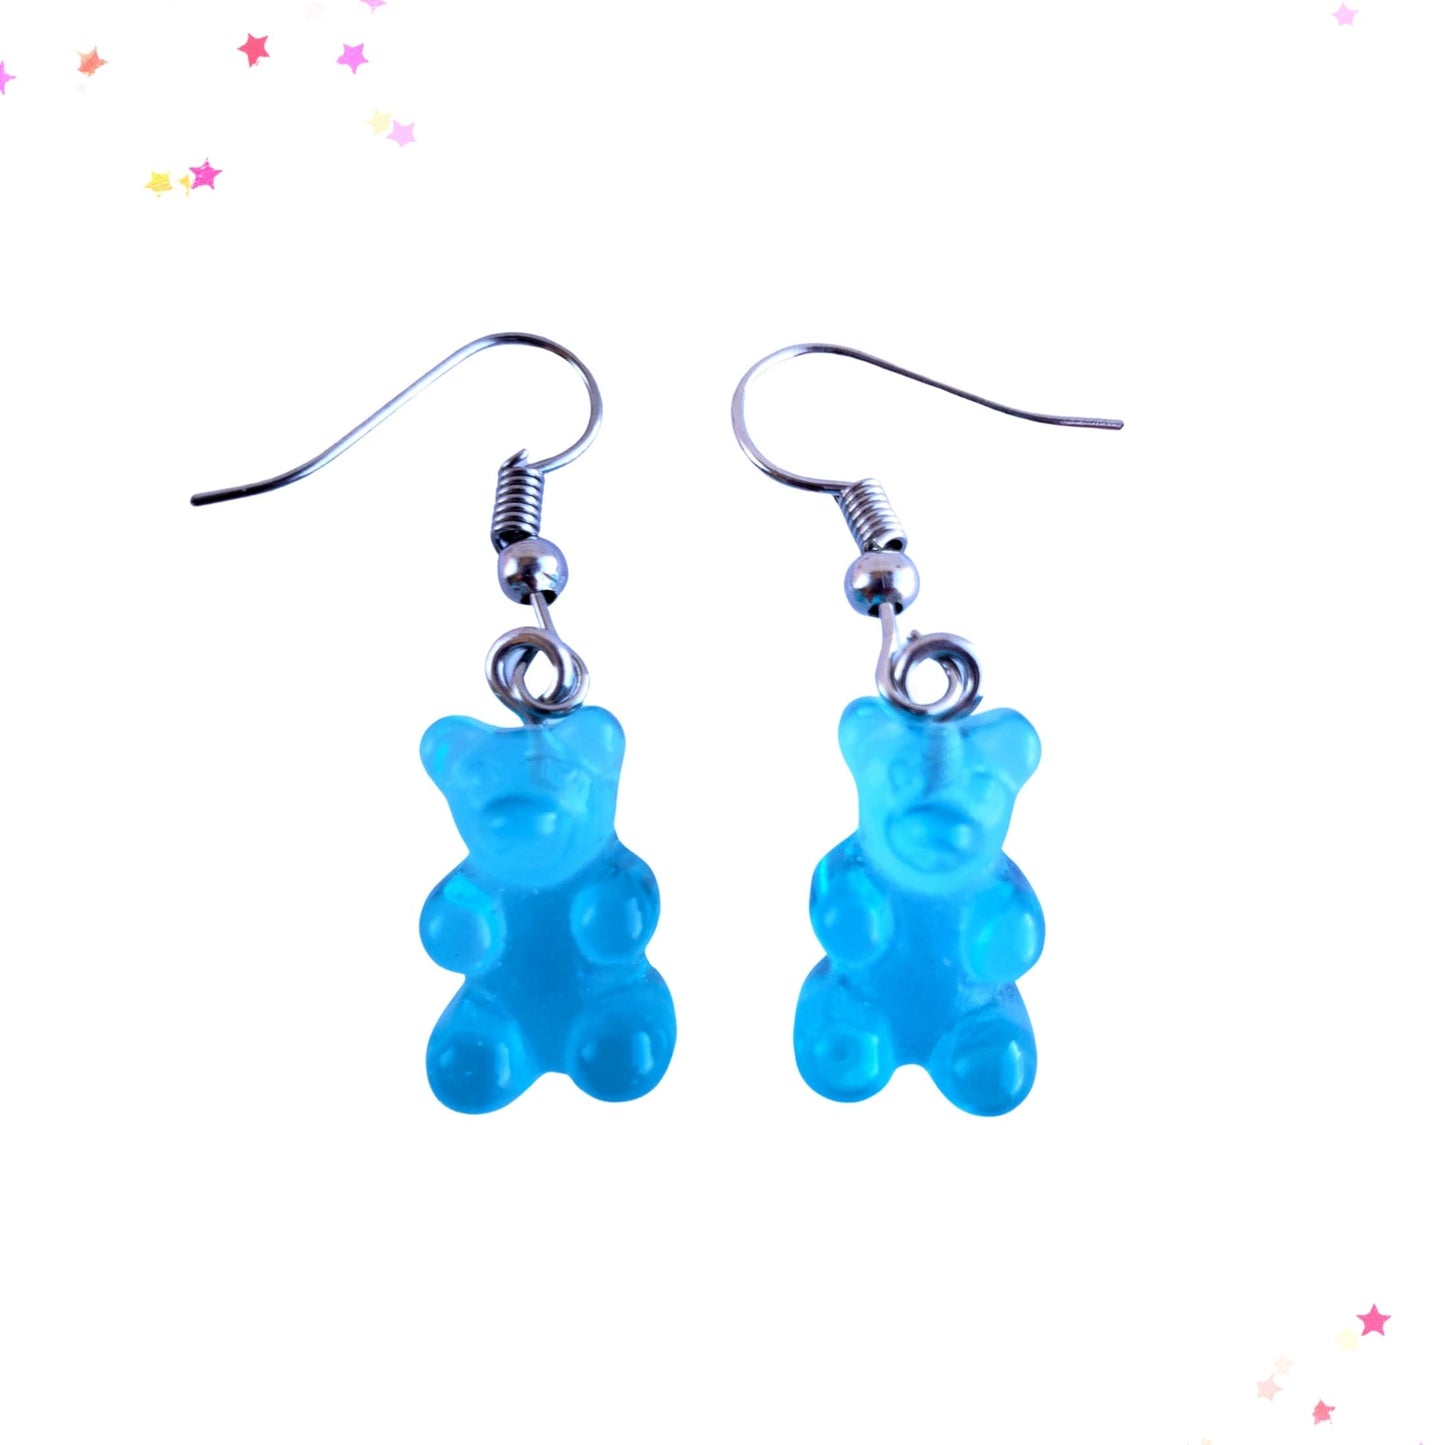 Gummy Bear Drop Earrings in Blue Raspberry from Confetti Kitty, Only 3.99